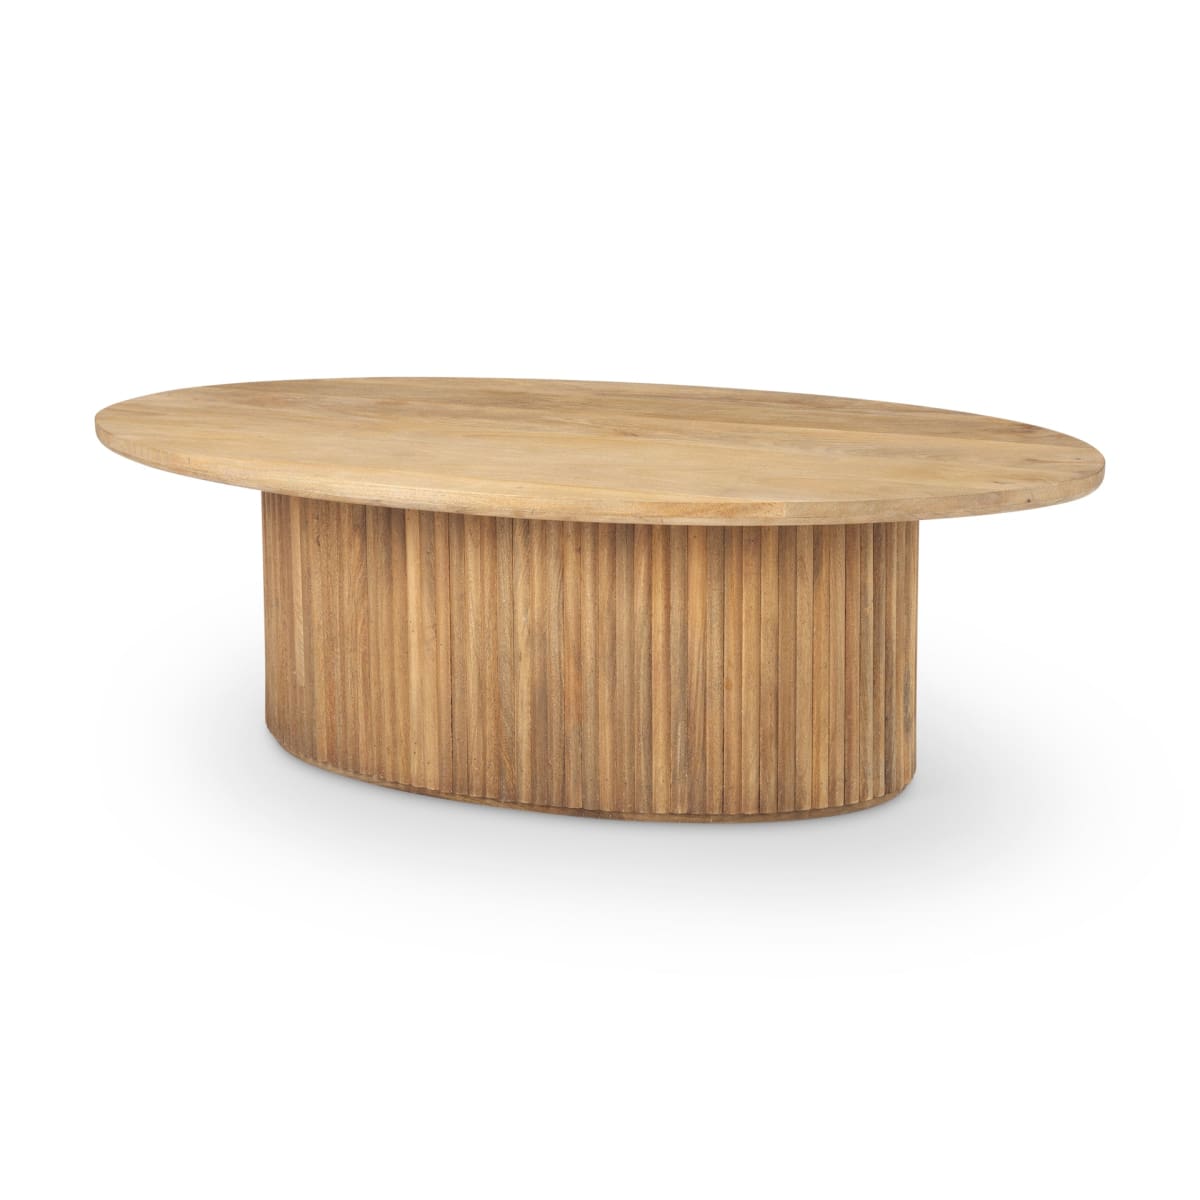 Furniture Barn - Terra Oval Coffee Table Light Brown Wood